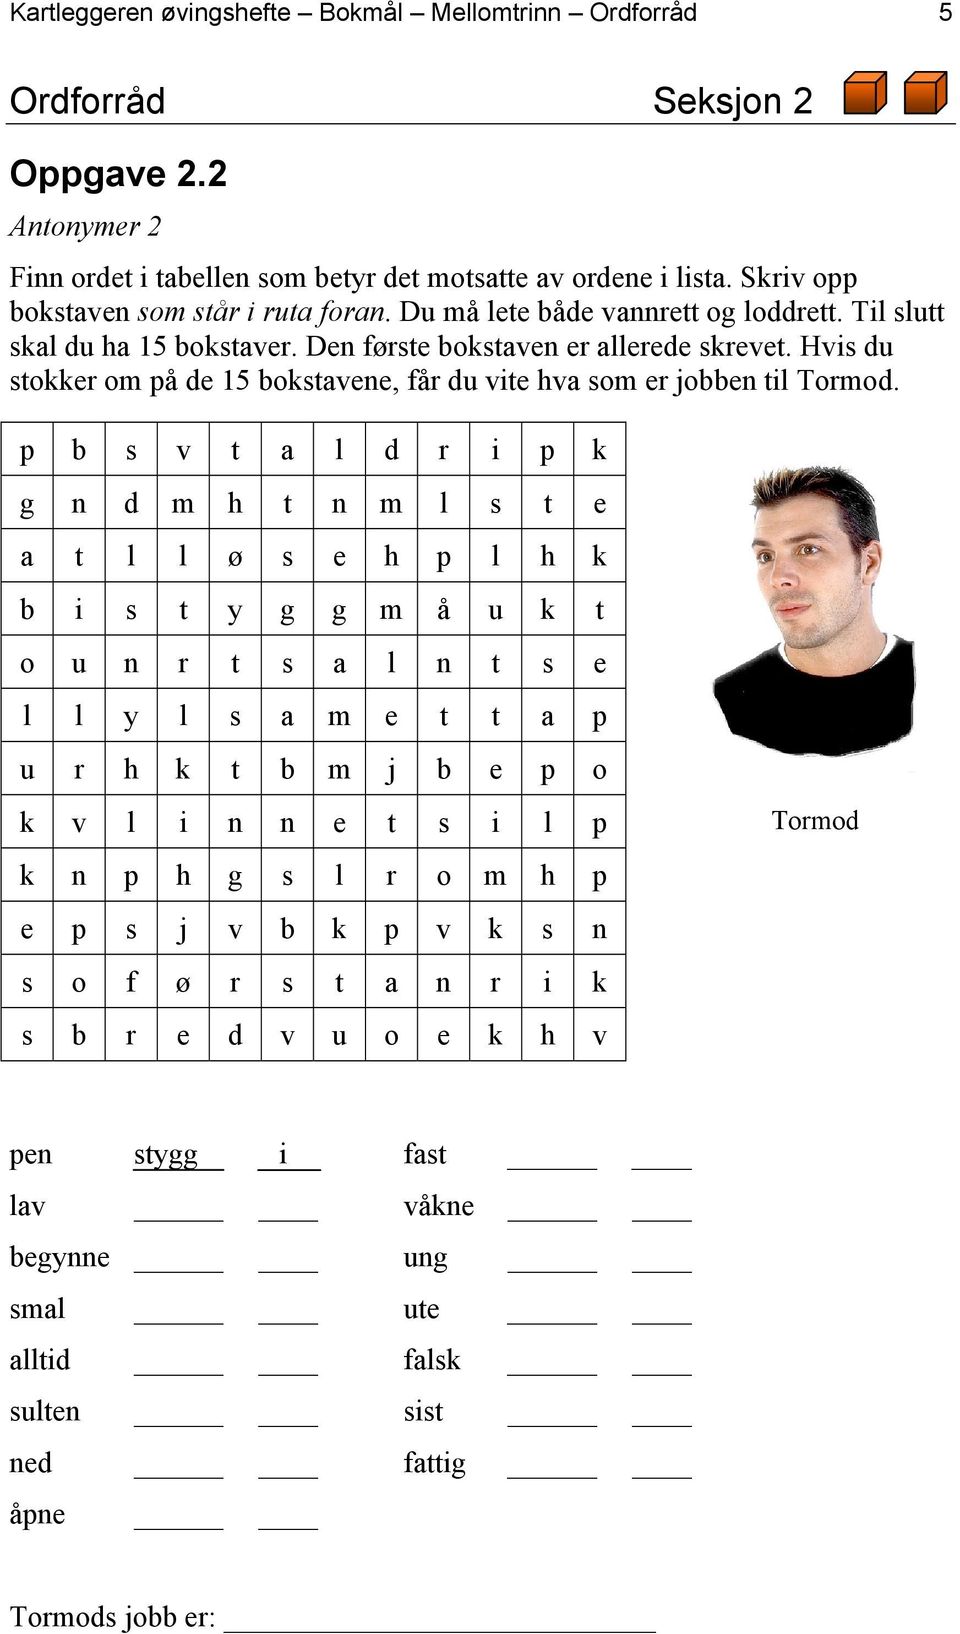 Hvis du stokker om på de 15 bokstavene, får du vite hva som er jobben til Tormod.